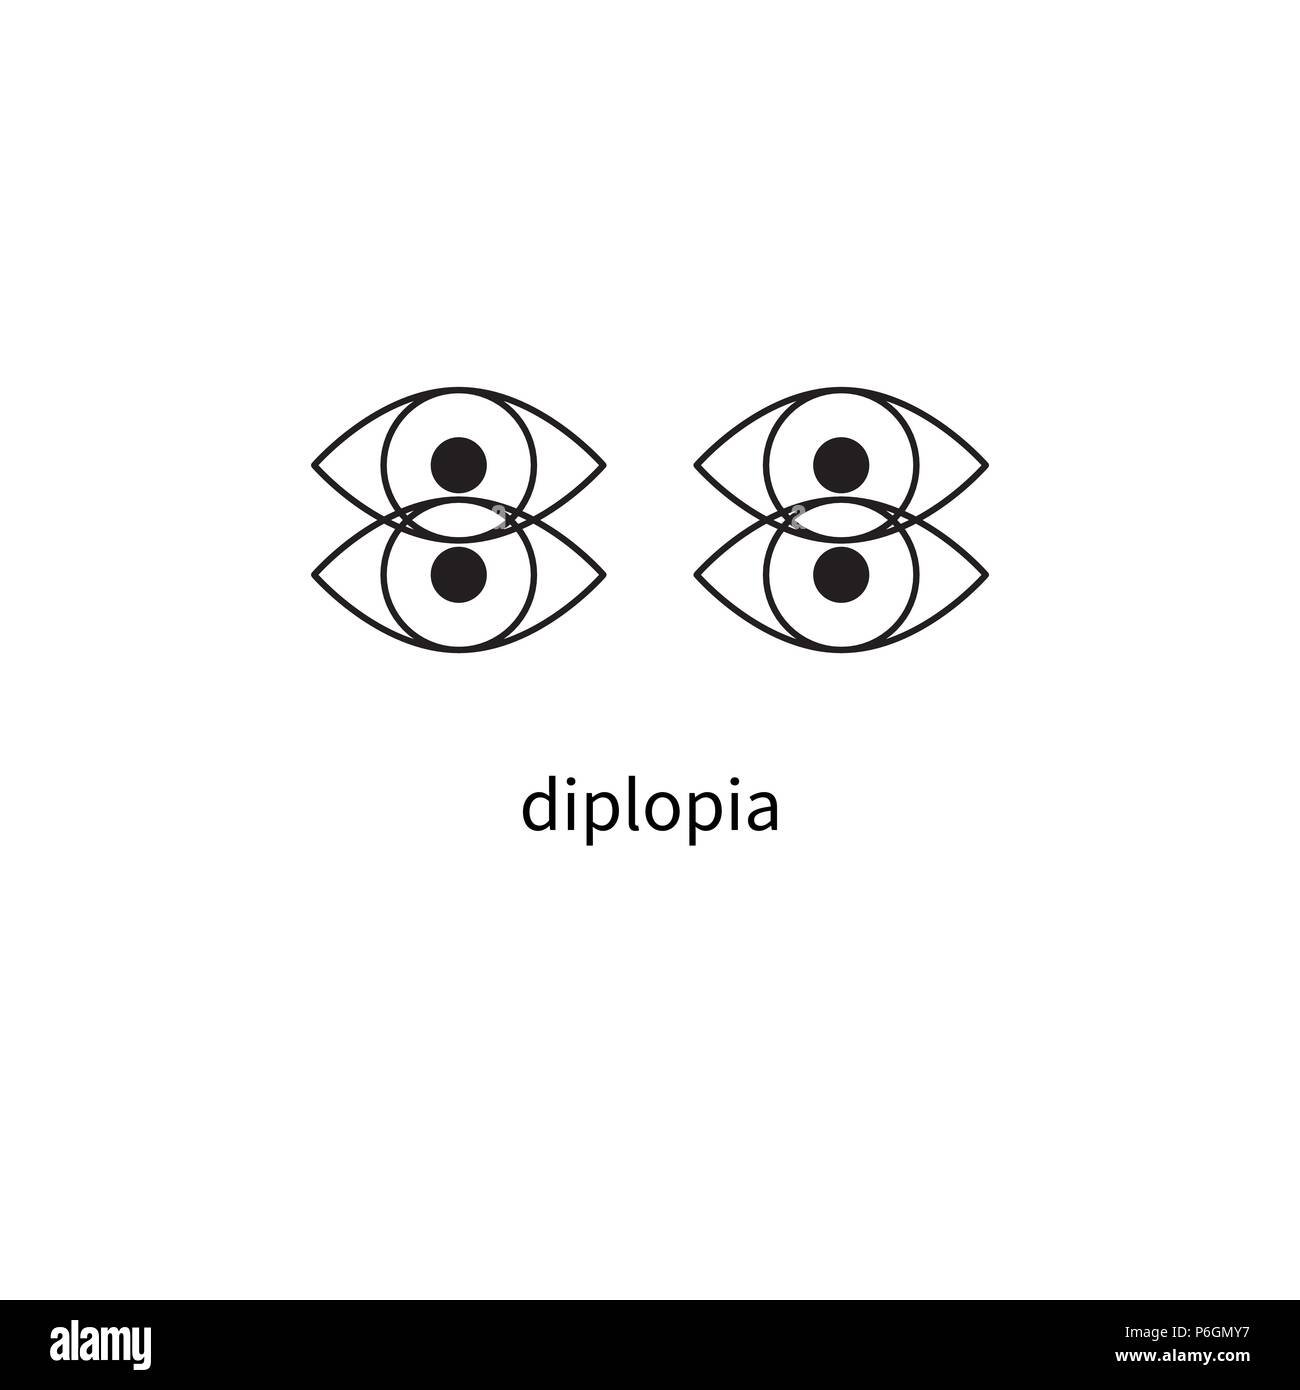 Diplopia